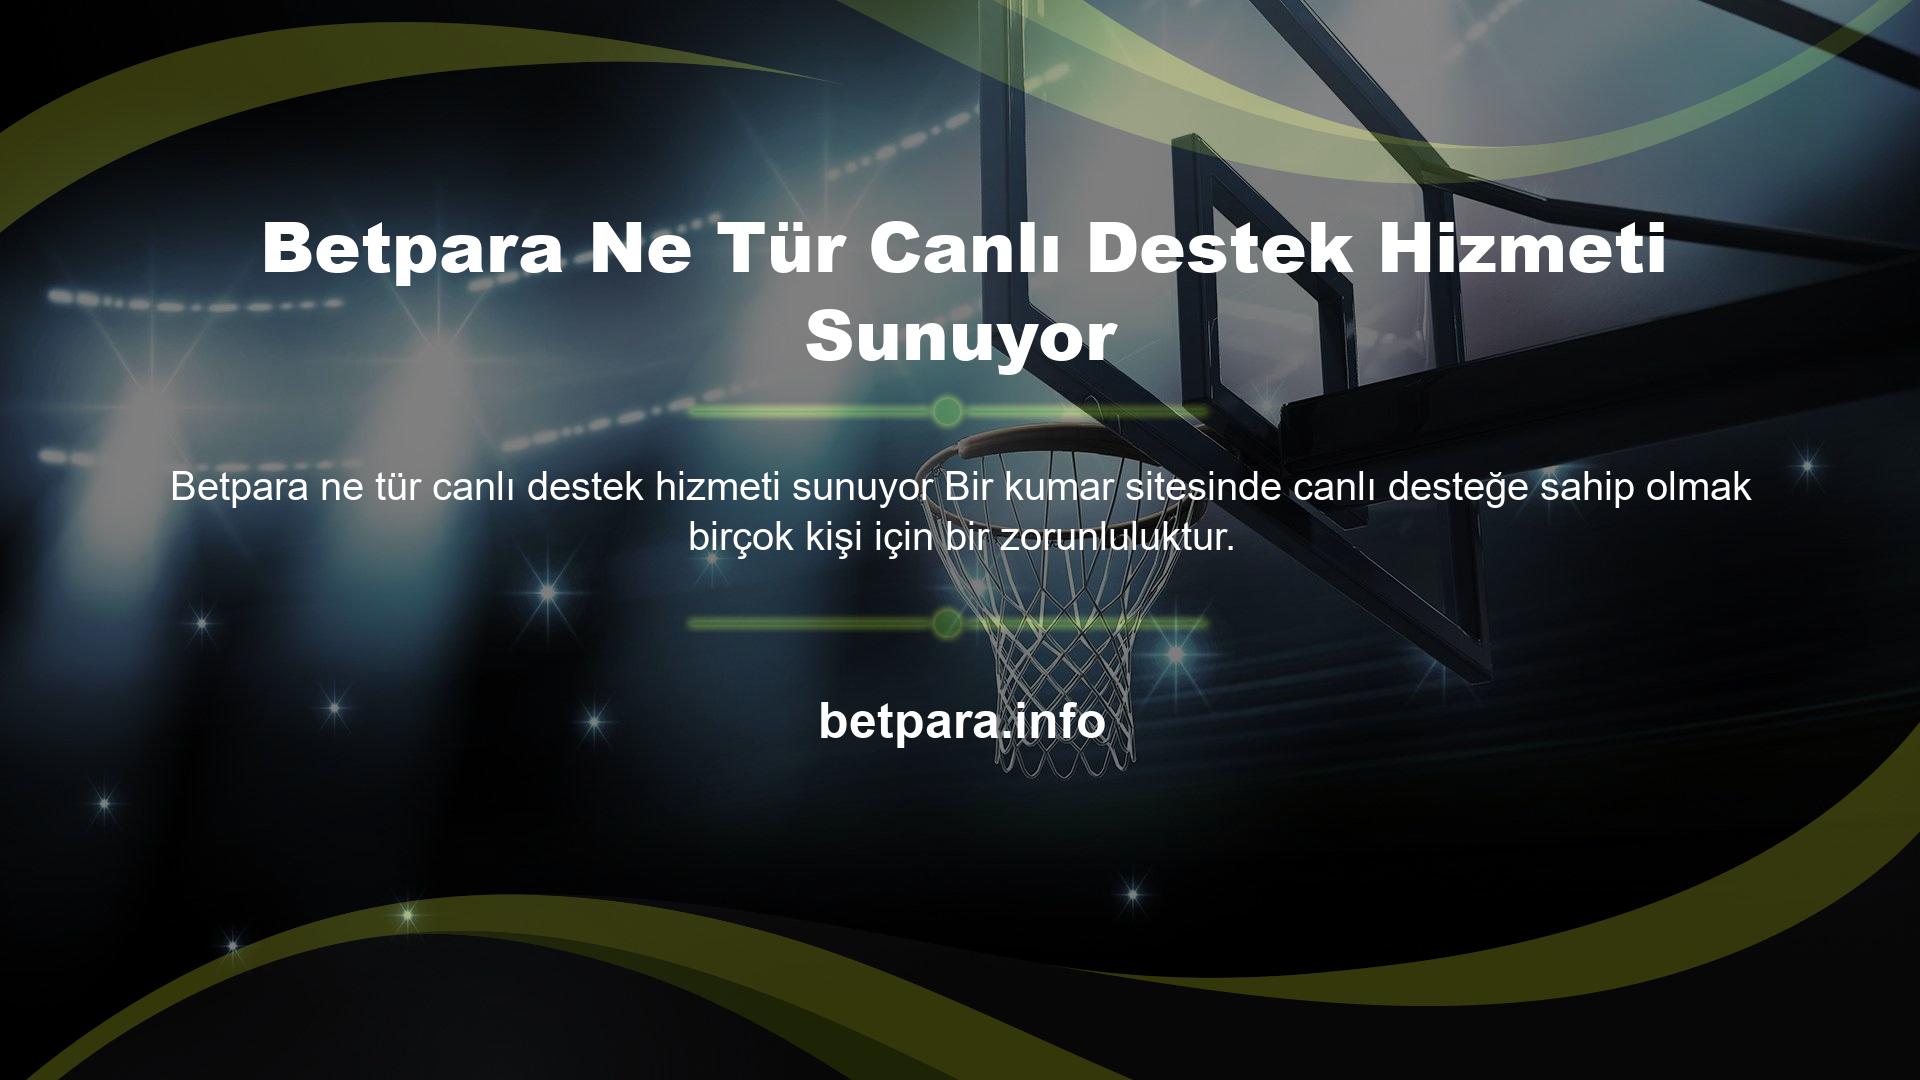 Bu bağlamda Betpara web sitesi her hizmeti en iyi şekilde sunmaktadır